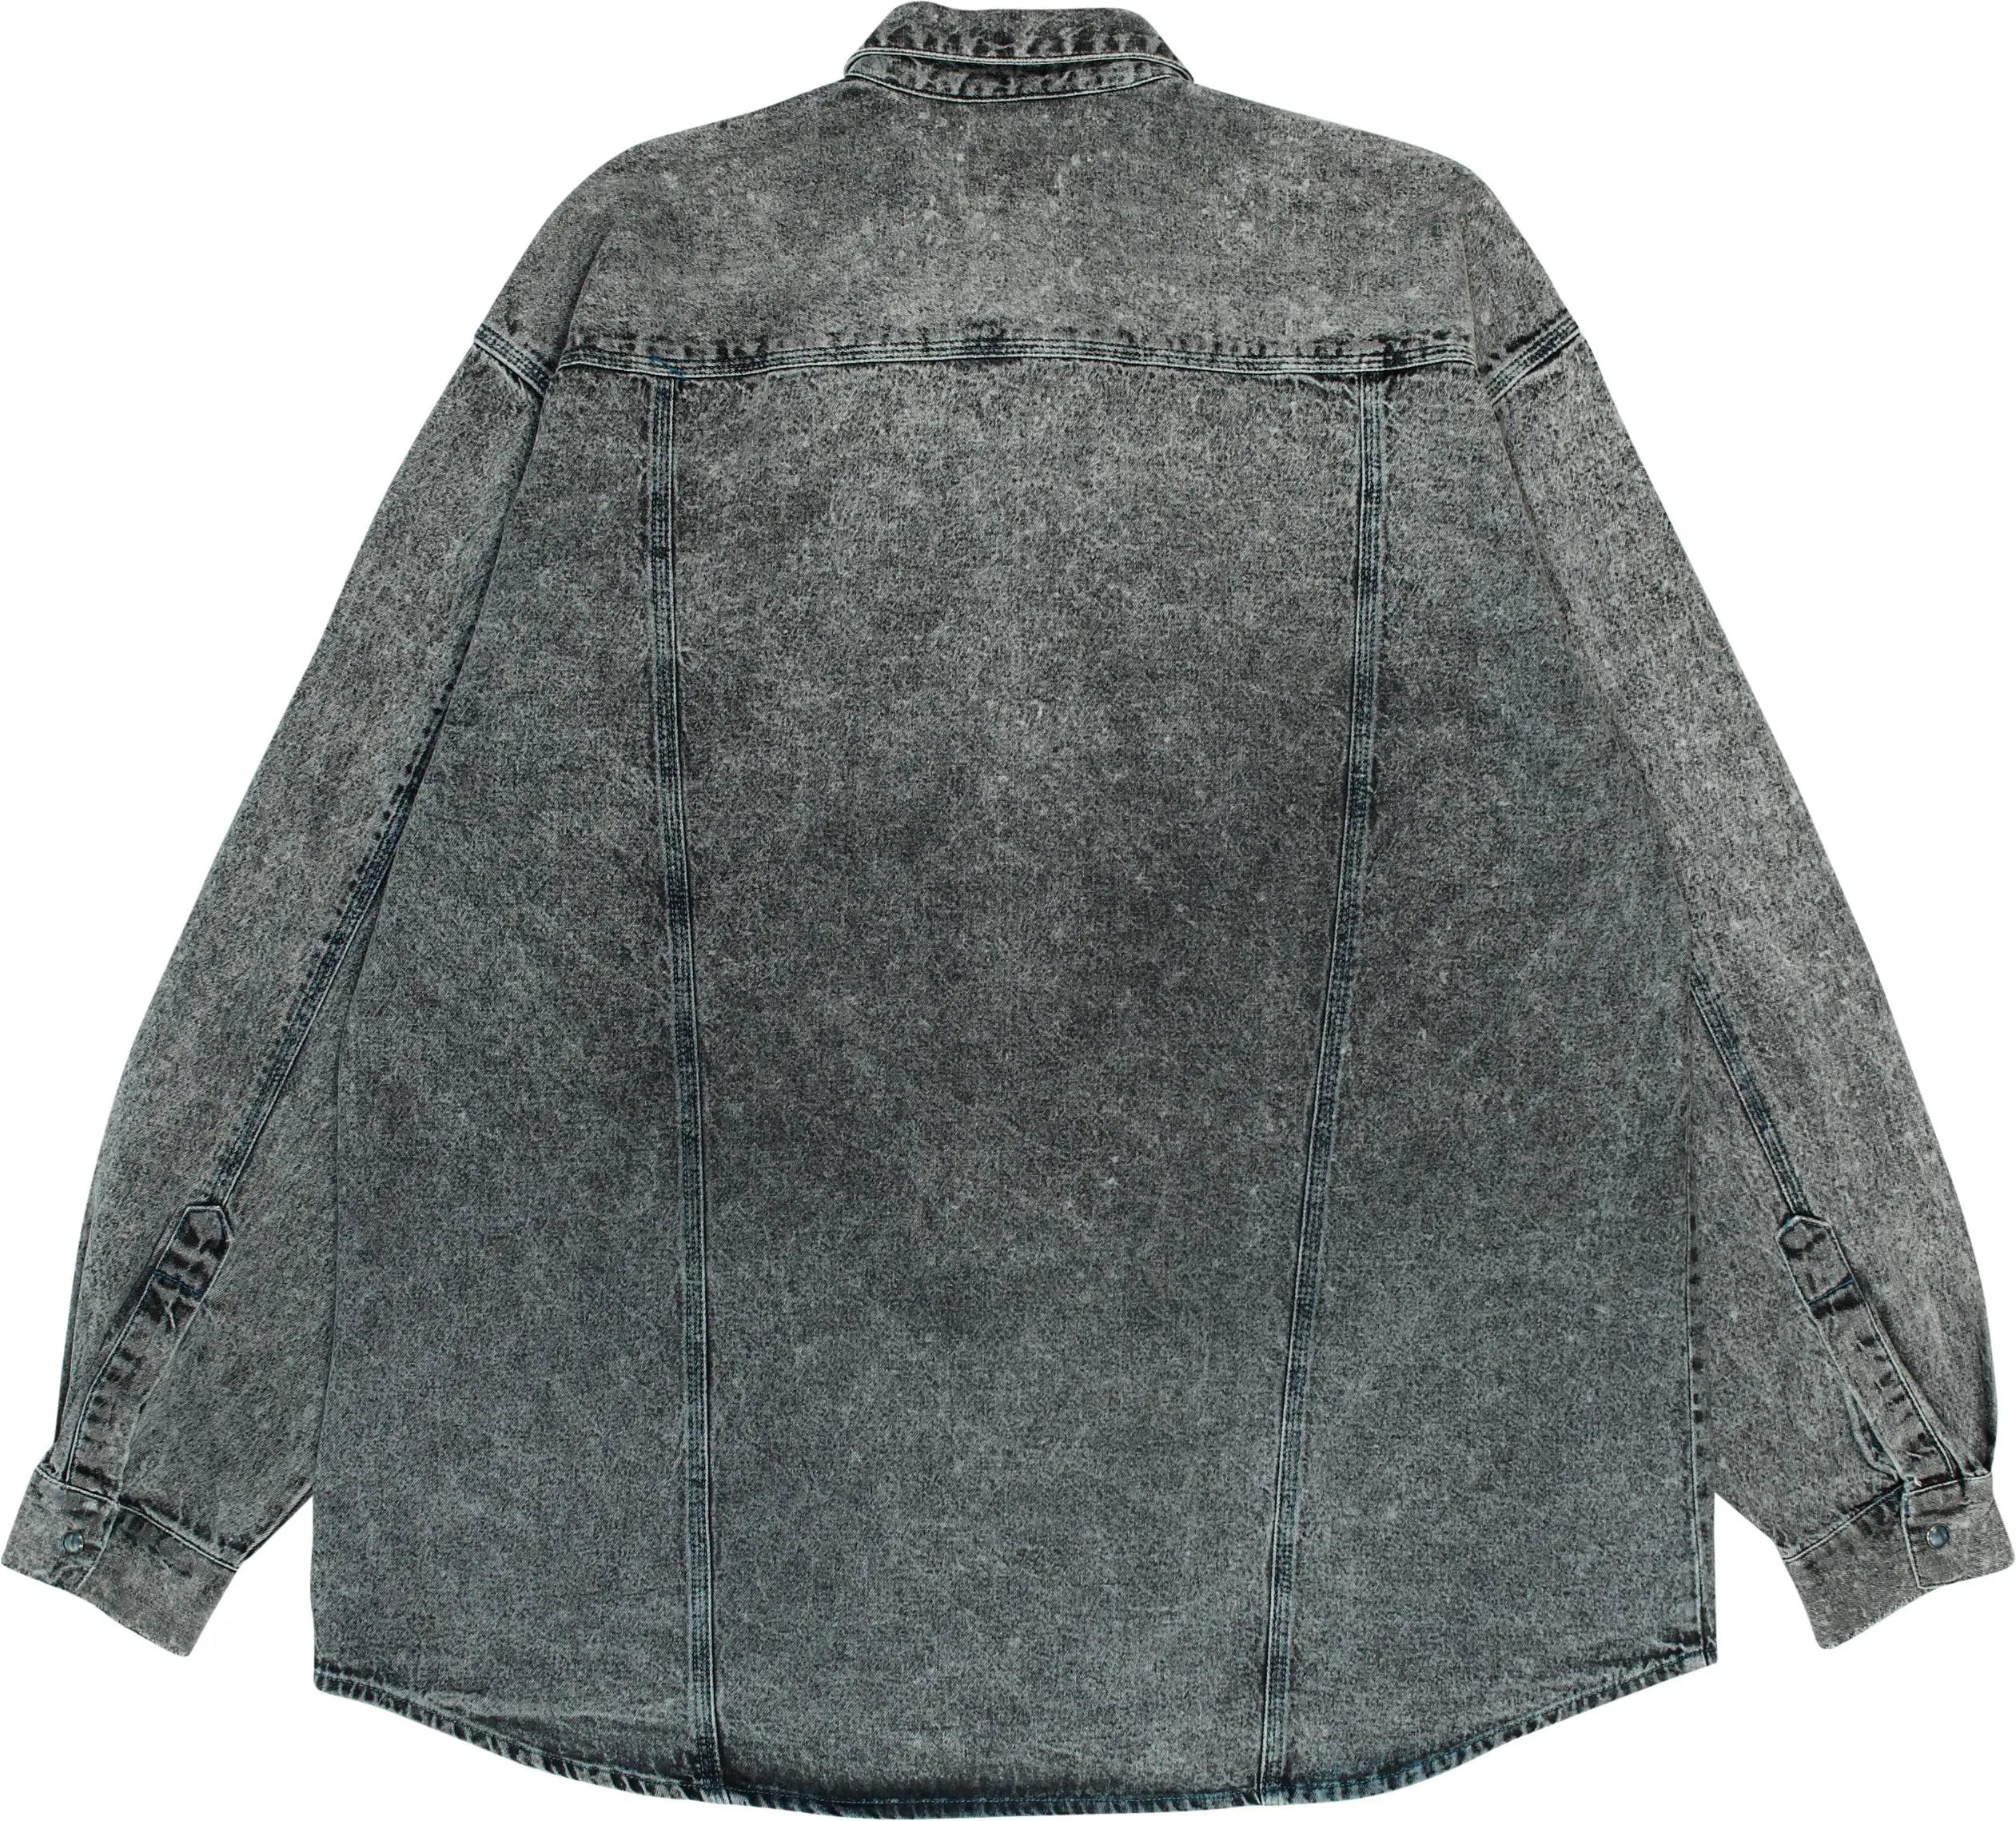 S.Oliver - Vintage Grey Denim Shirt- ThriftTale.com - Vintage and second handclothing